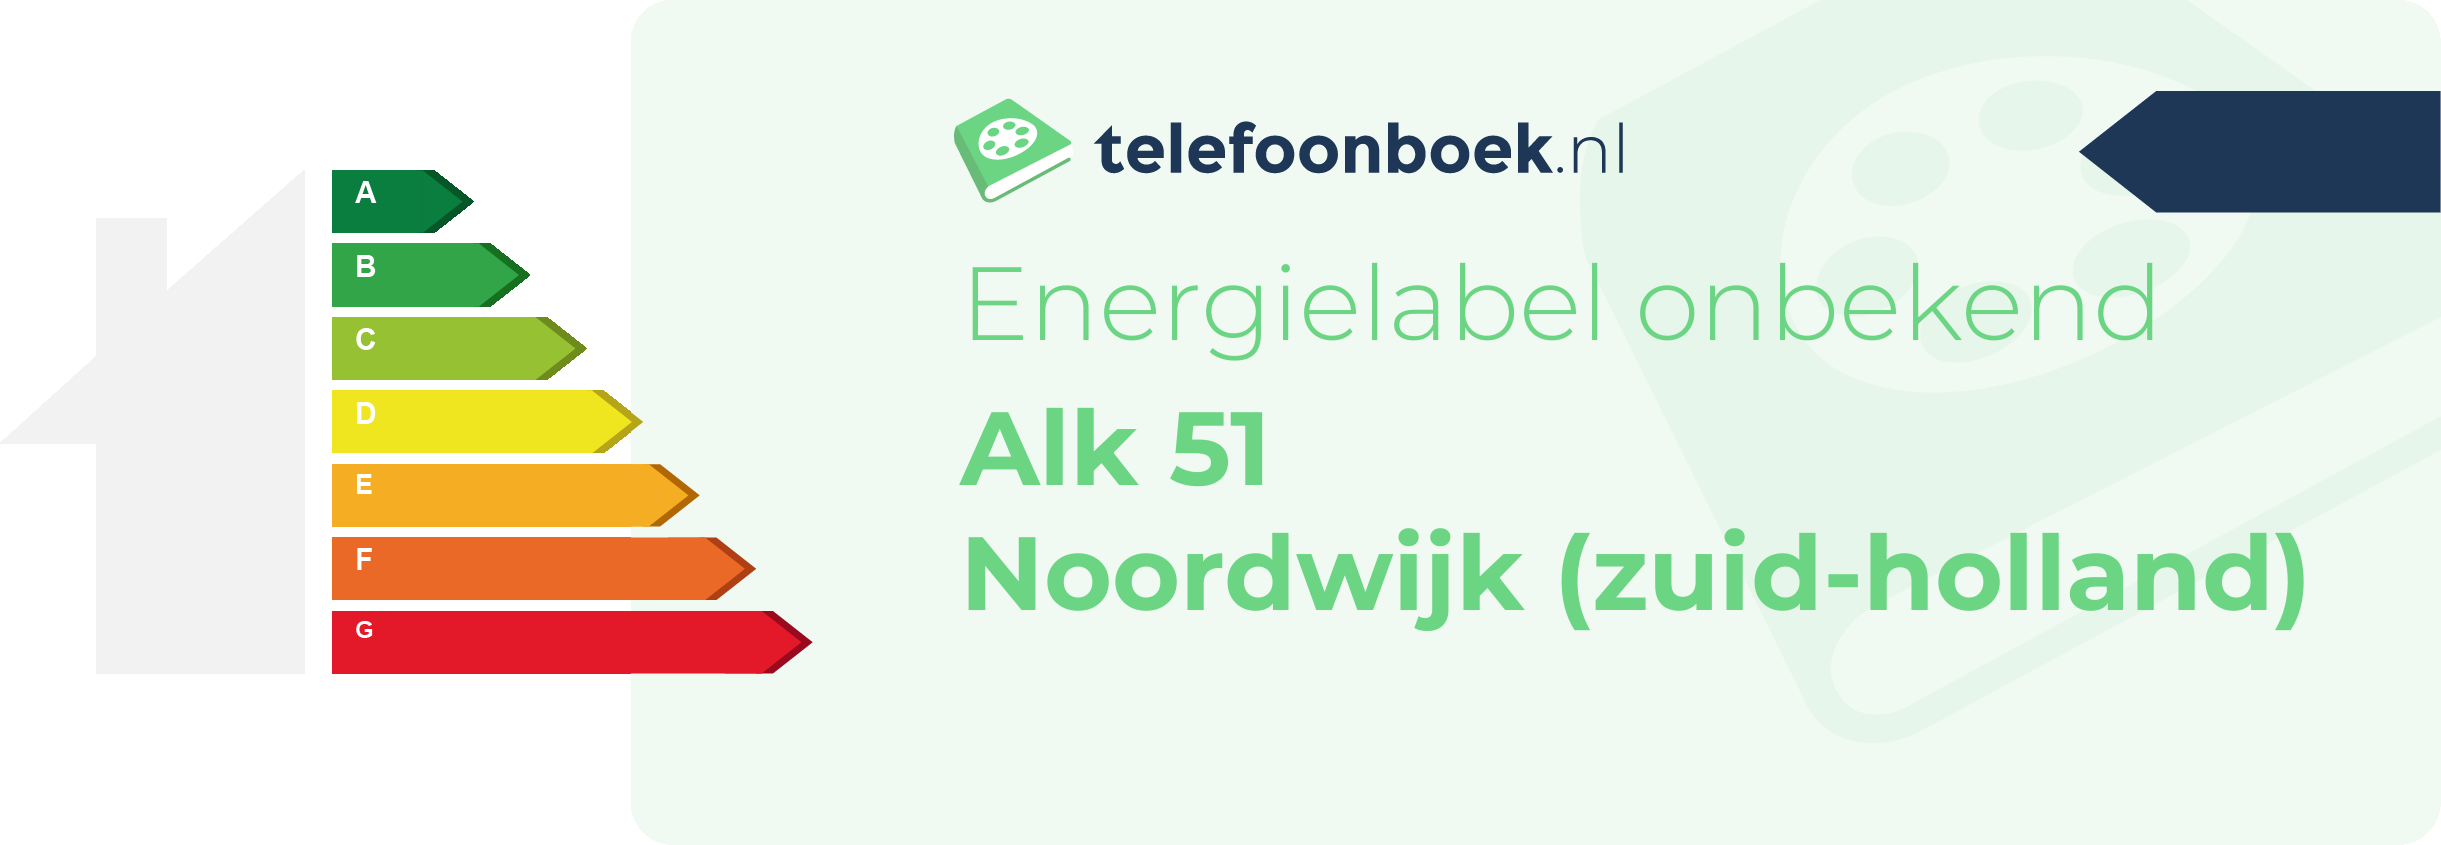 Energielabel Alk 51 Noordwijk (Zuid-Holland)